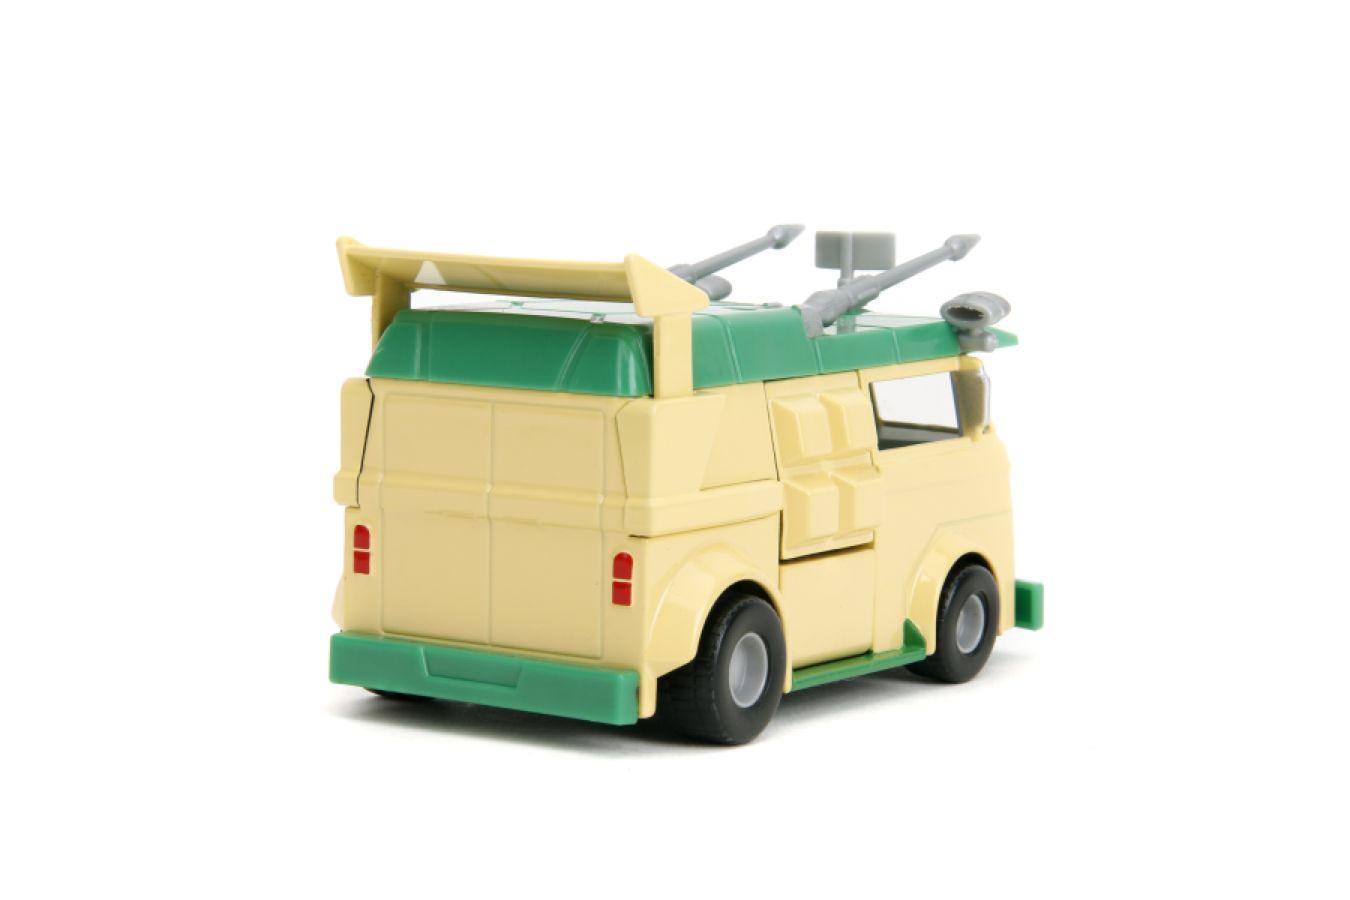 JAD34723 Hollywood Rides - Teenage Mutant Ninja Turtles Party Wagon 1:32 Scale Diecast Vehicle - Jada Toys - Titan Pop Culture